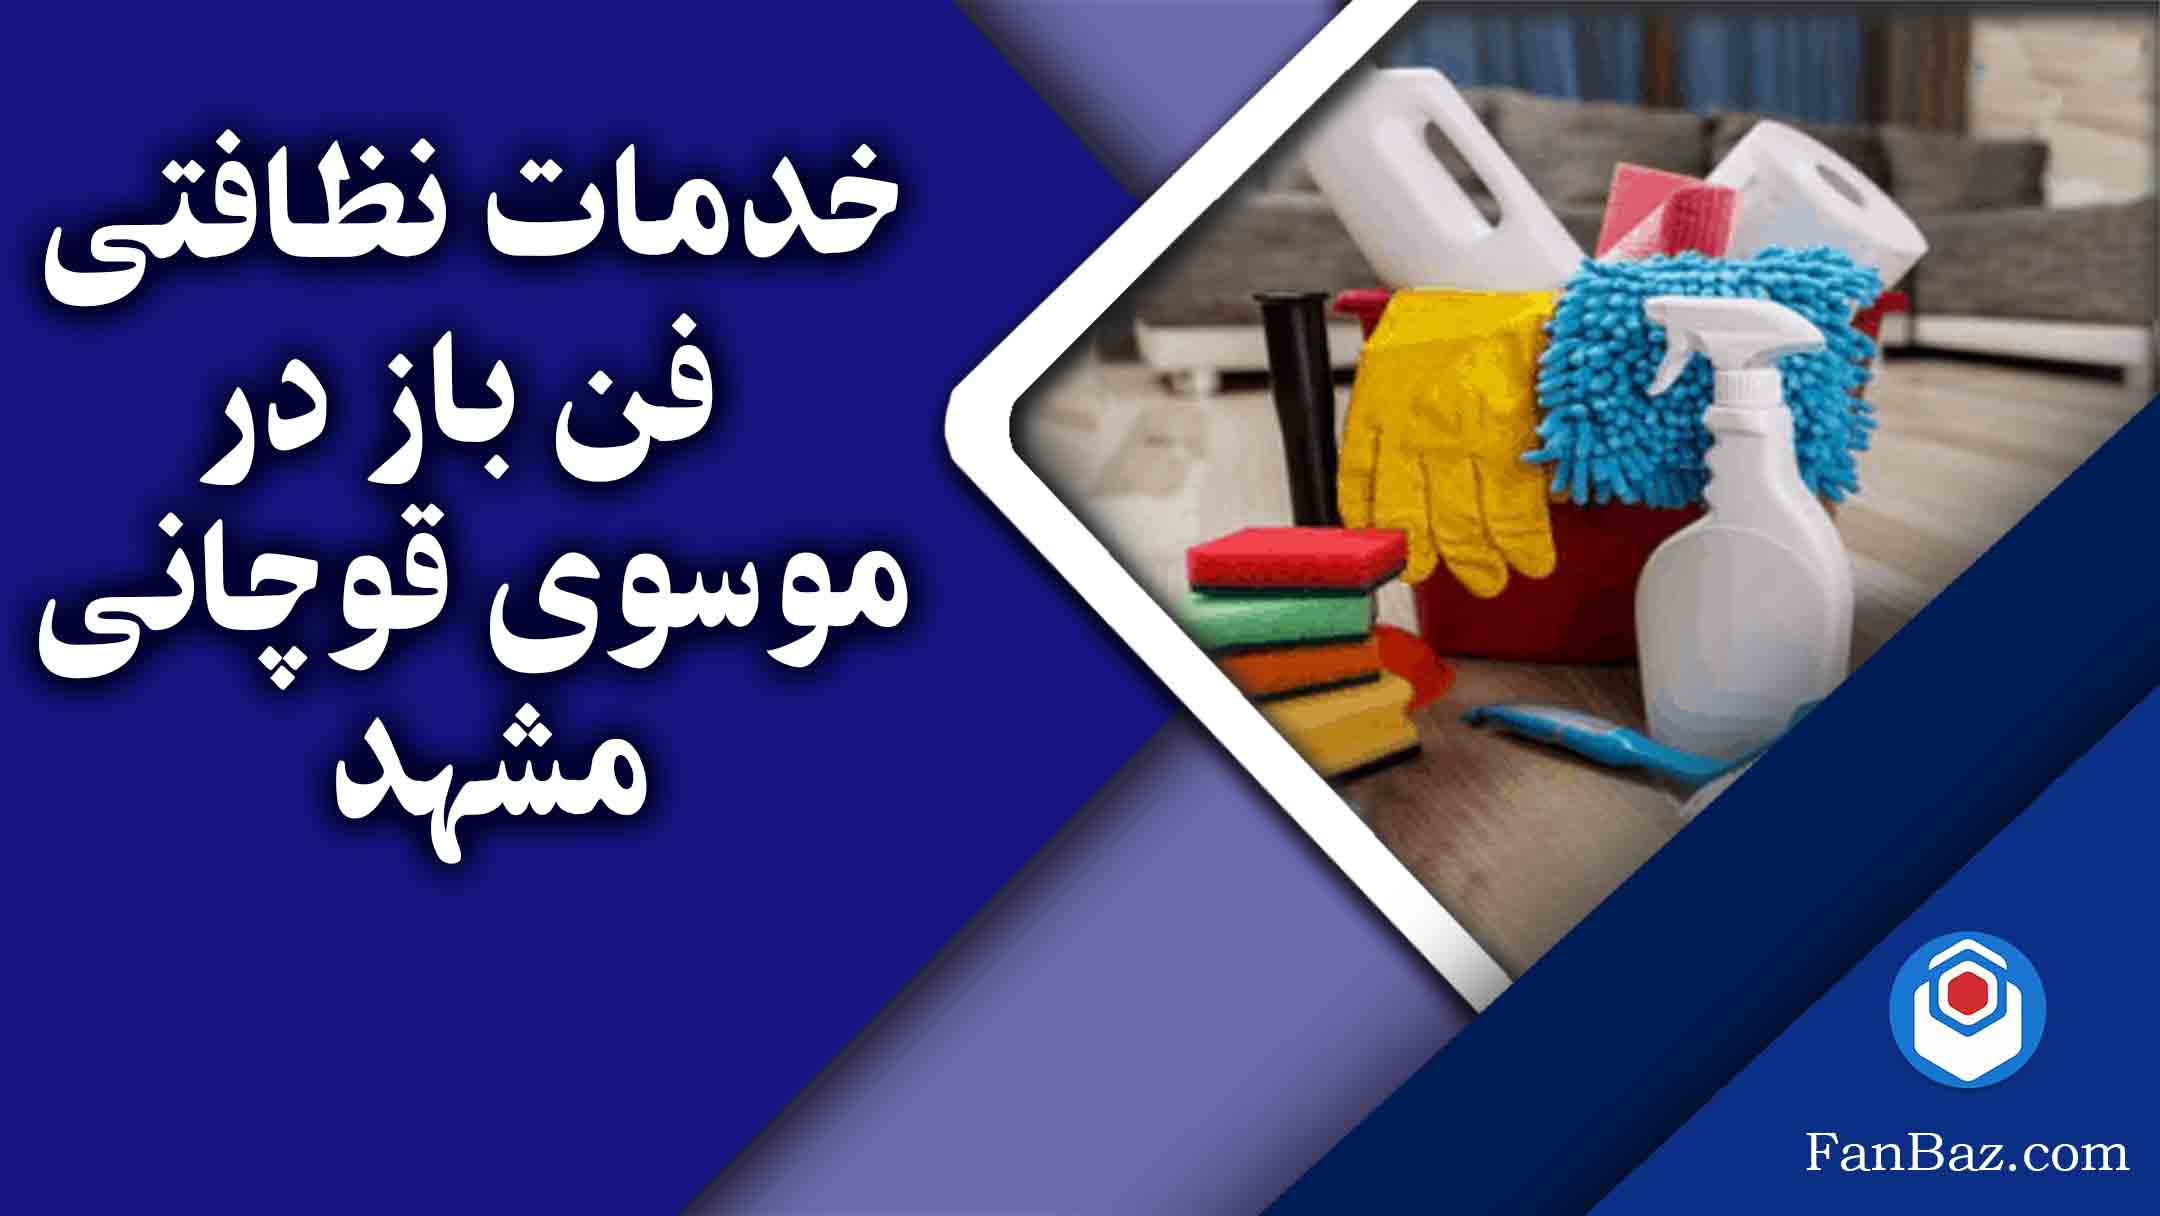 خدمات نظافتی فن باز در موسوی قوچانی مشهد